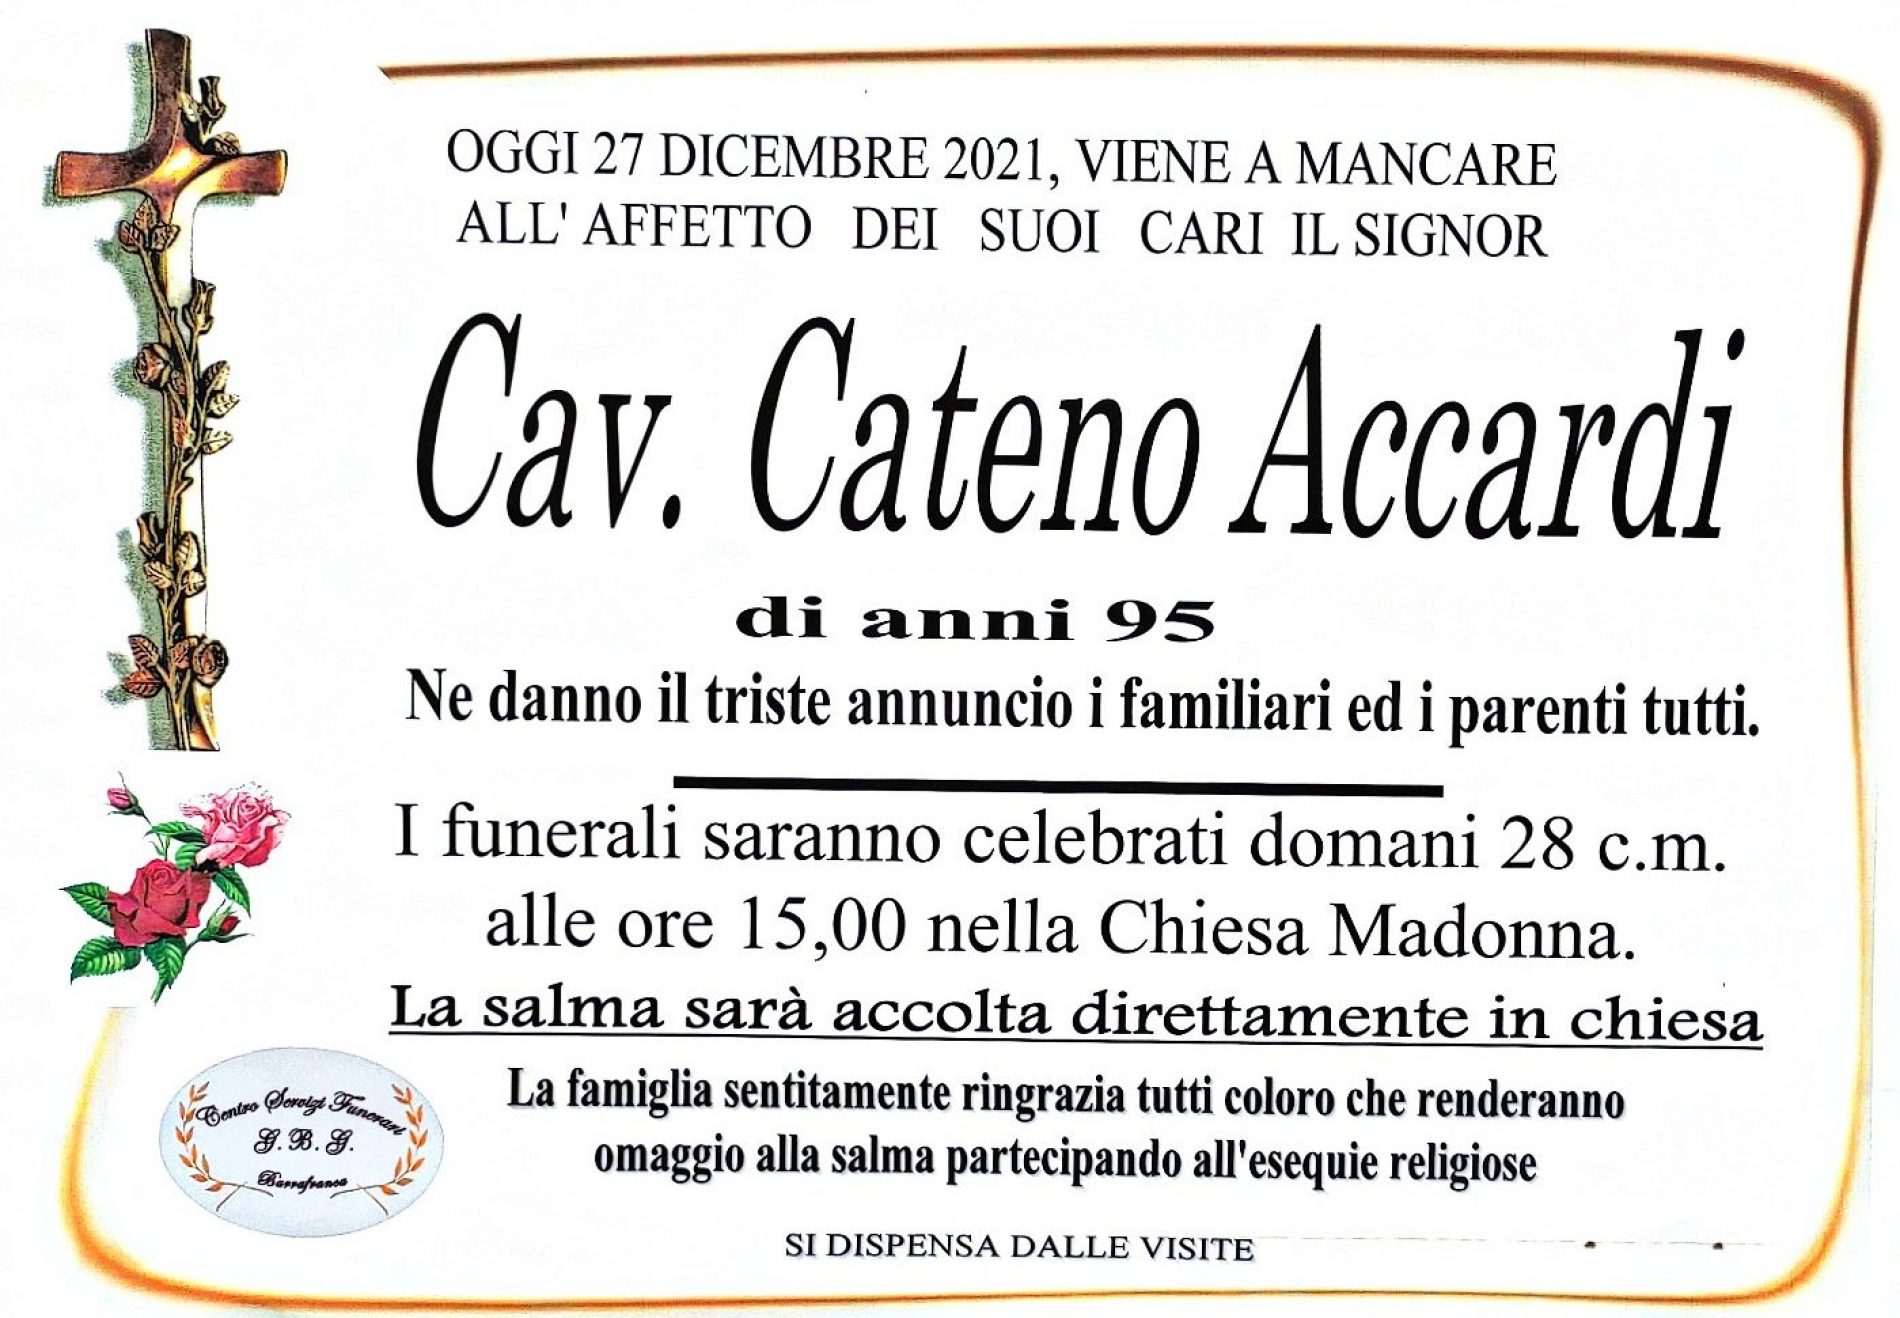 Annuncio agenzia funebre G.B.G.  Cav. Cateno Accardi di anni 95